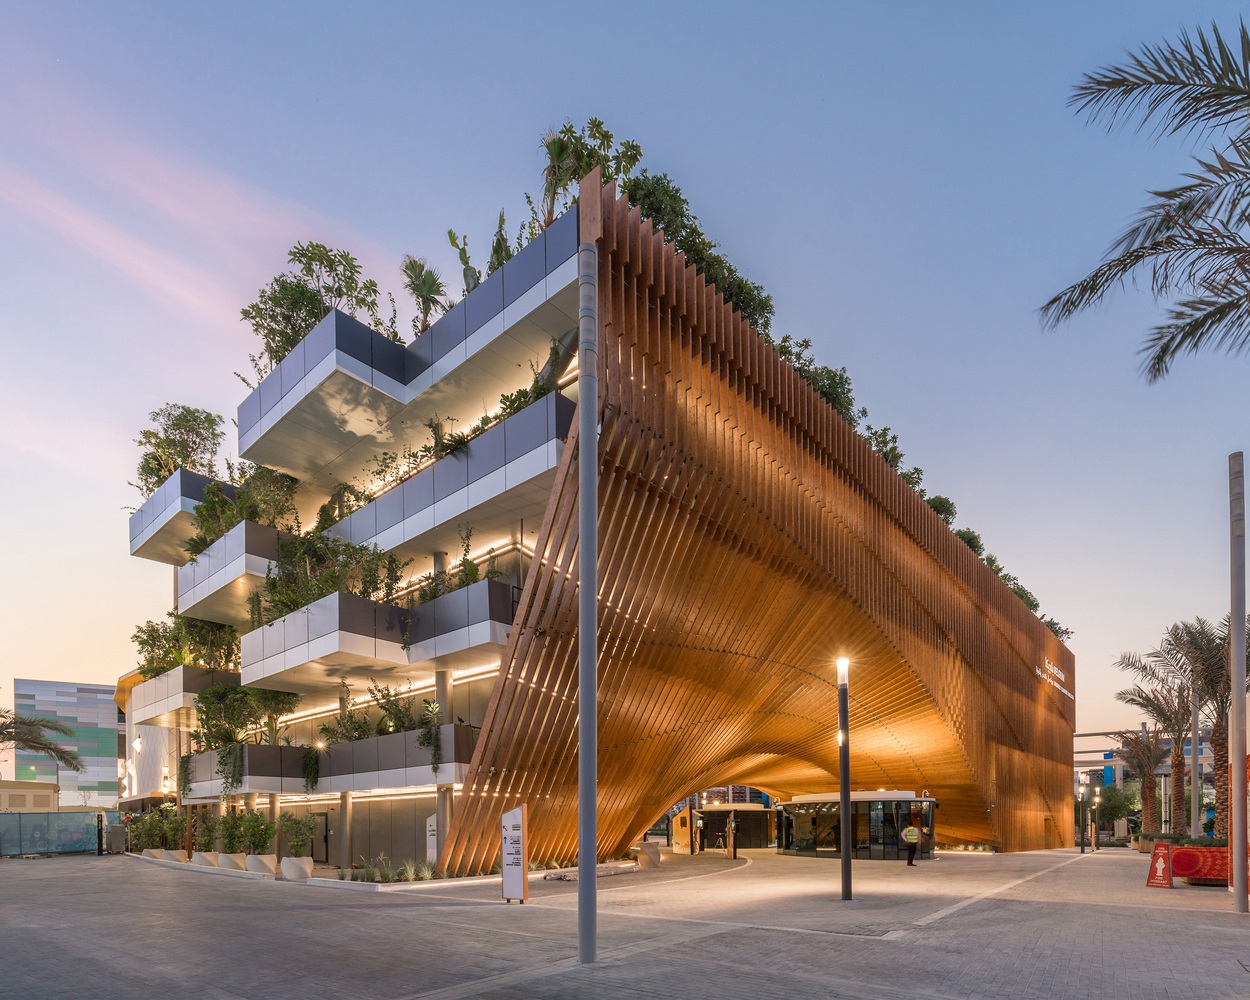 Green Arch Belgian Pavilion Expo 2020 Dubai / Vincent Callebaut Architectures + assar architects © Nizar Bredan